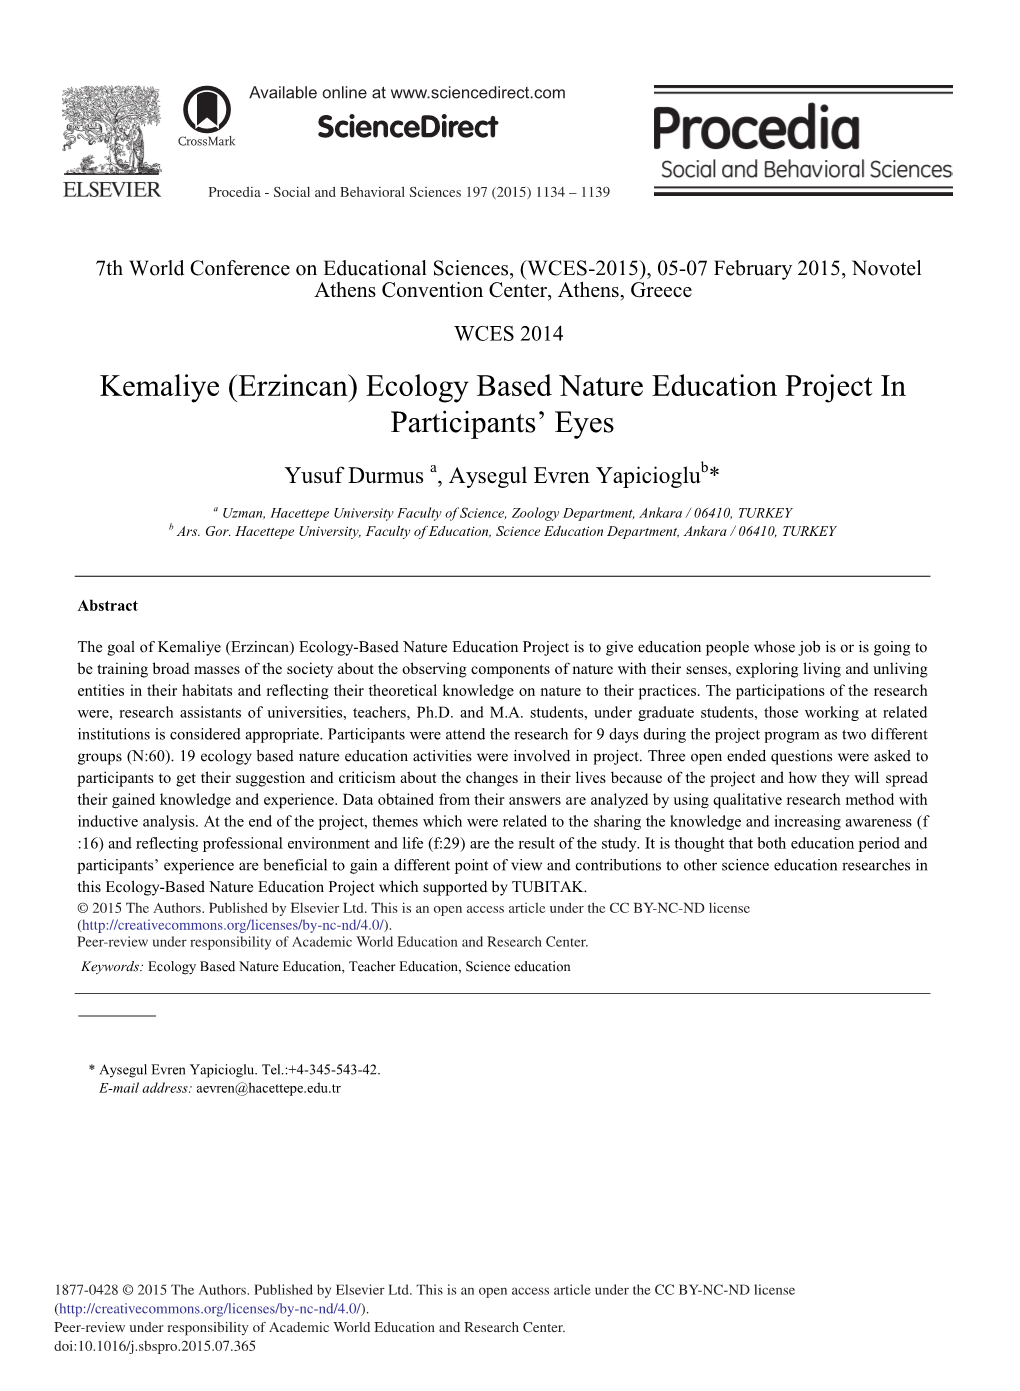 Kemaliye (Erzincan) Ecology Based Nature Education Project in Participants’ Eyes